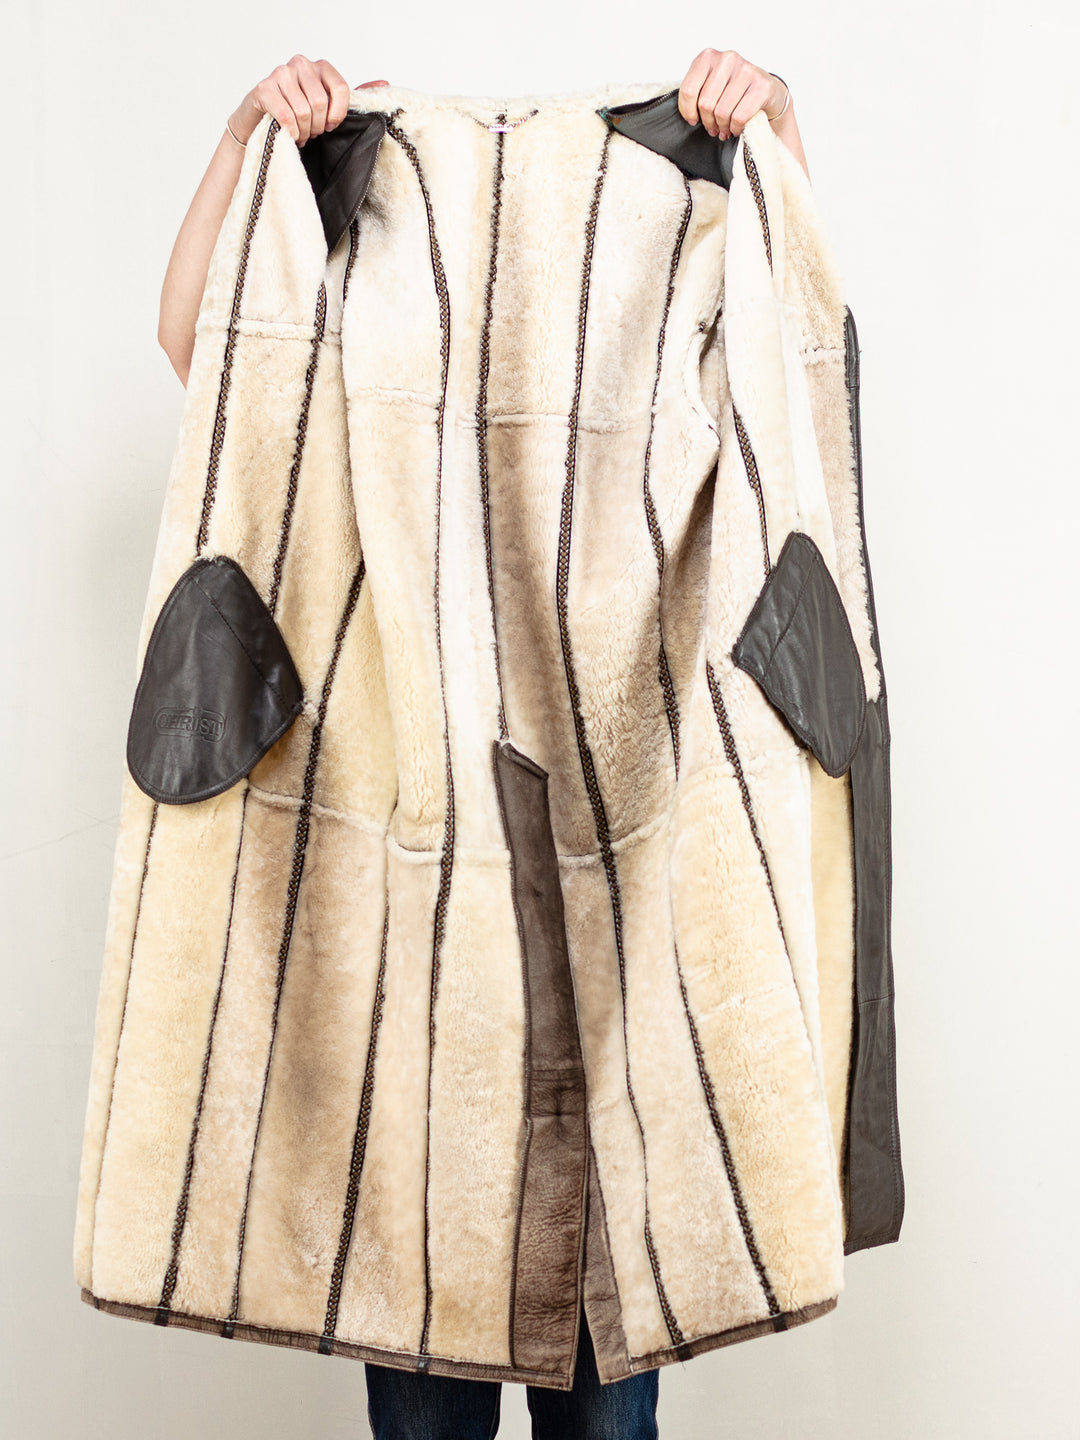 Penny Lane Coat vintage 70's women afghan sheepskin shearling beige brown winter longline coat oversized vintage outwear coat size large L